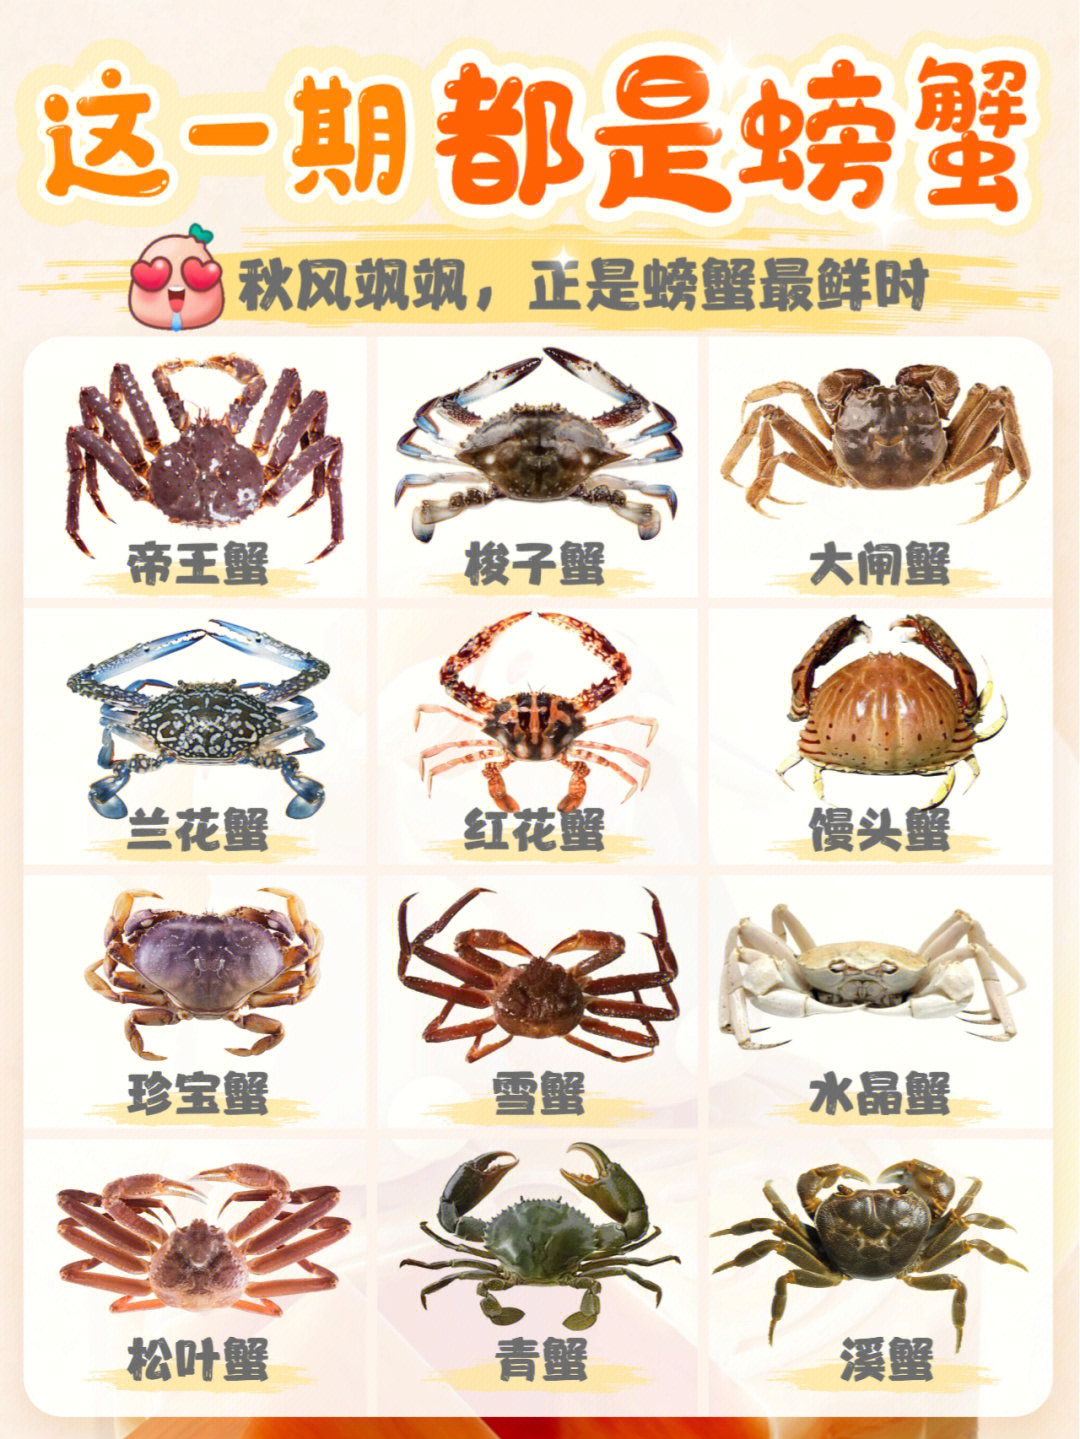 螃蟹分几种图片